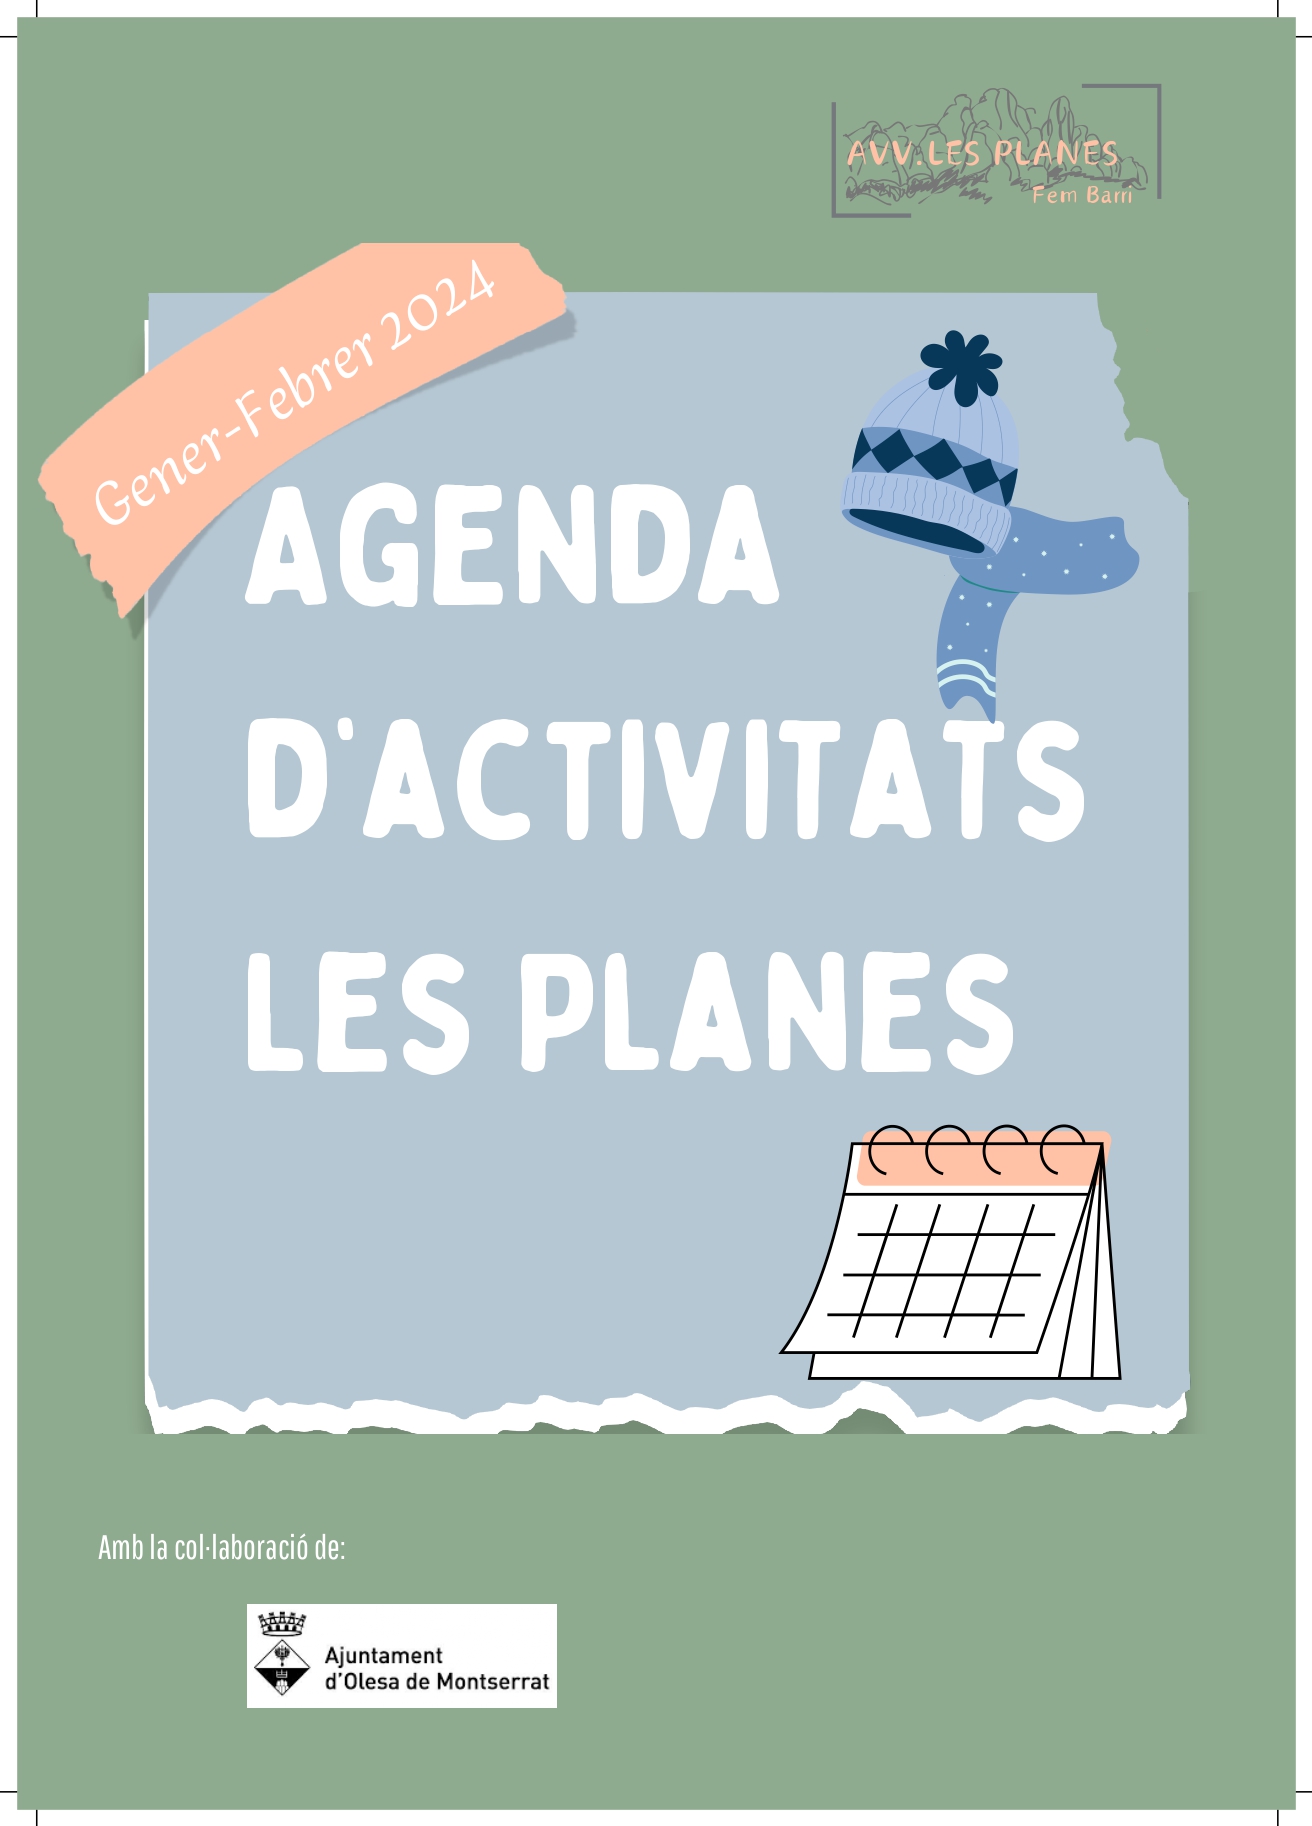 Agenda d'activitats gener-febrer de l'AV Les Planes